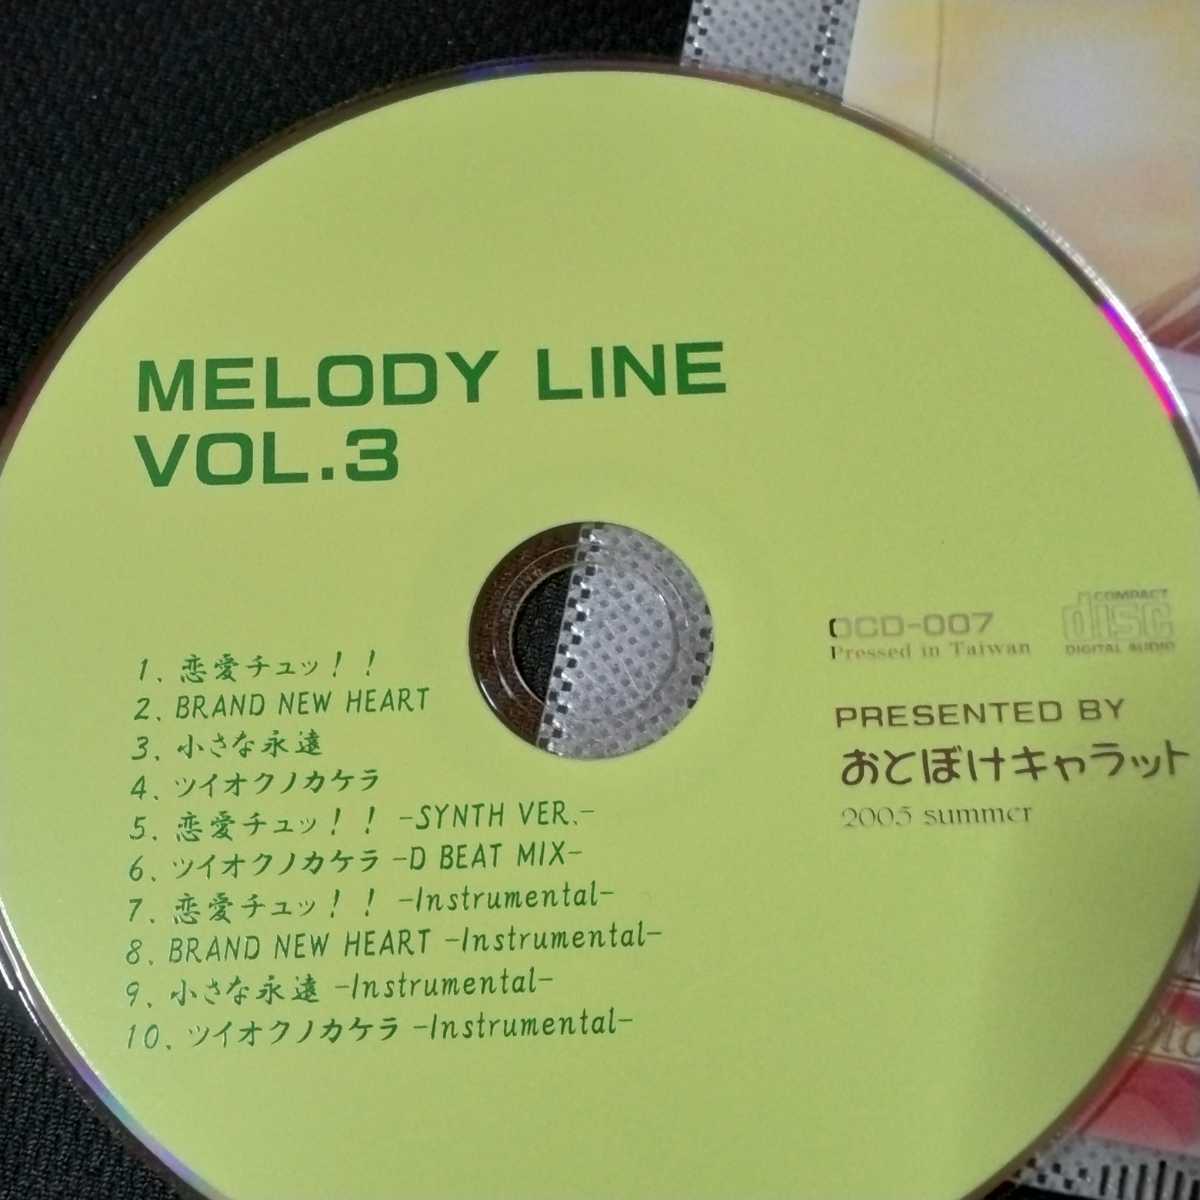 MELODY LINE VOL.3 / おとぼけキャラット CD 同人 音楽CD 響カズラ プチまりの_画像4